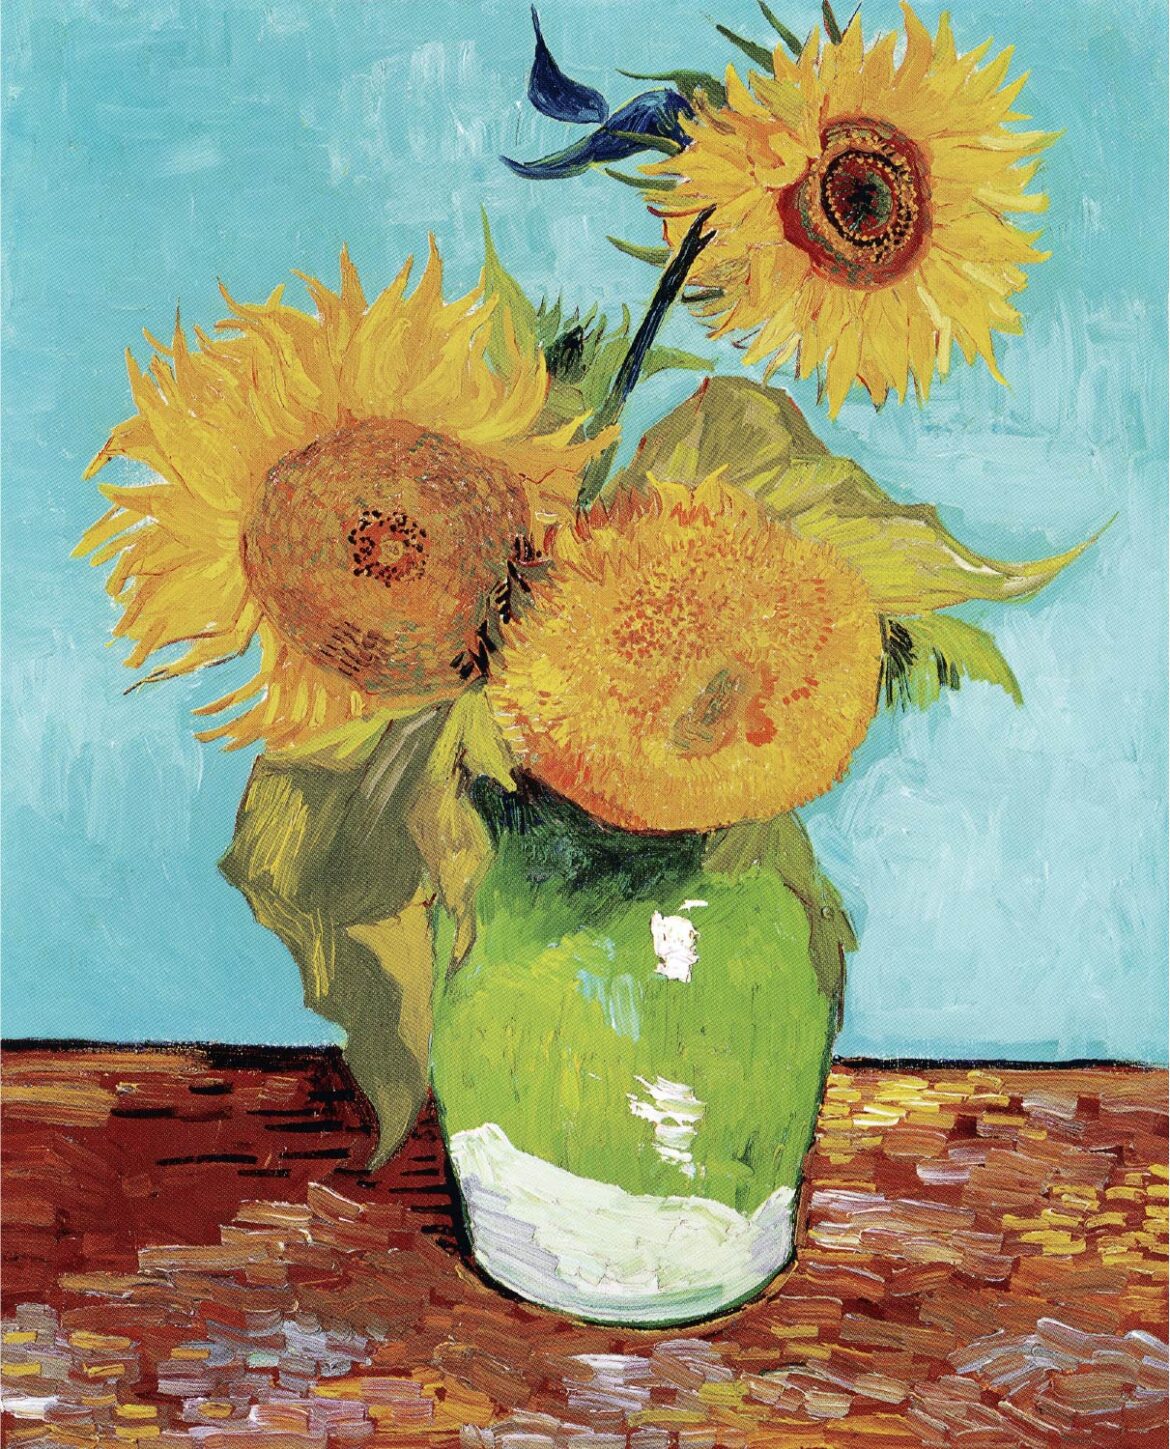 【無料壁紙】フィンセント・ファン・ゴッホ「ひまわり (3本のひまわり) (1888)」 / Vincent van Gogh_Vase with Three Sunflowers (1888)